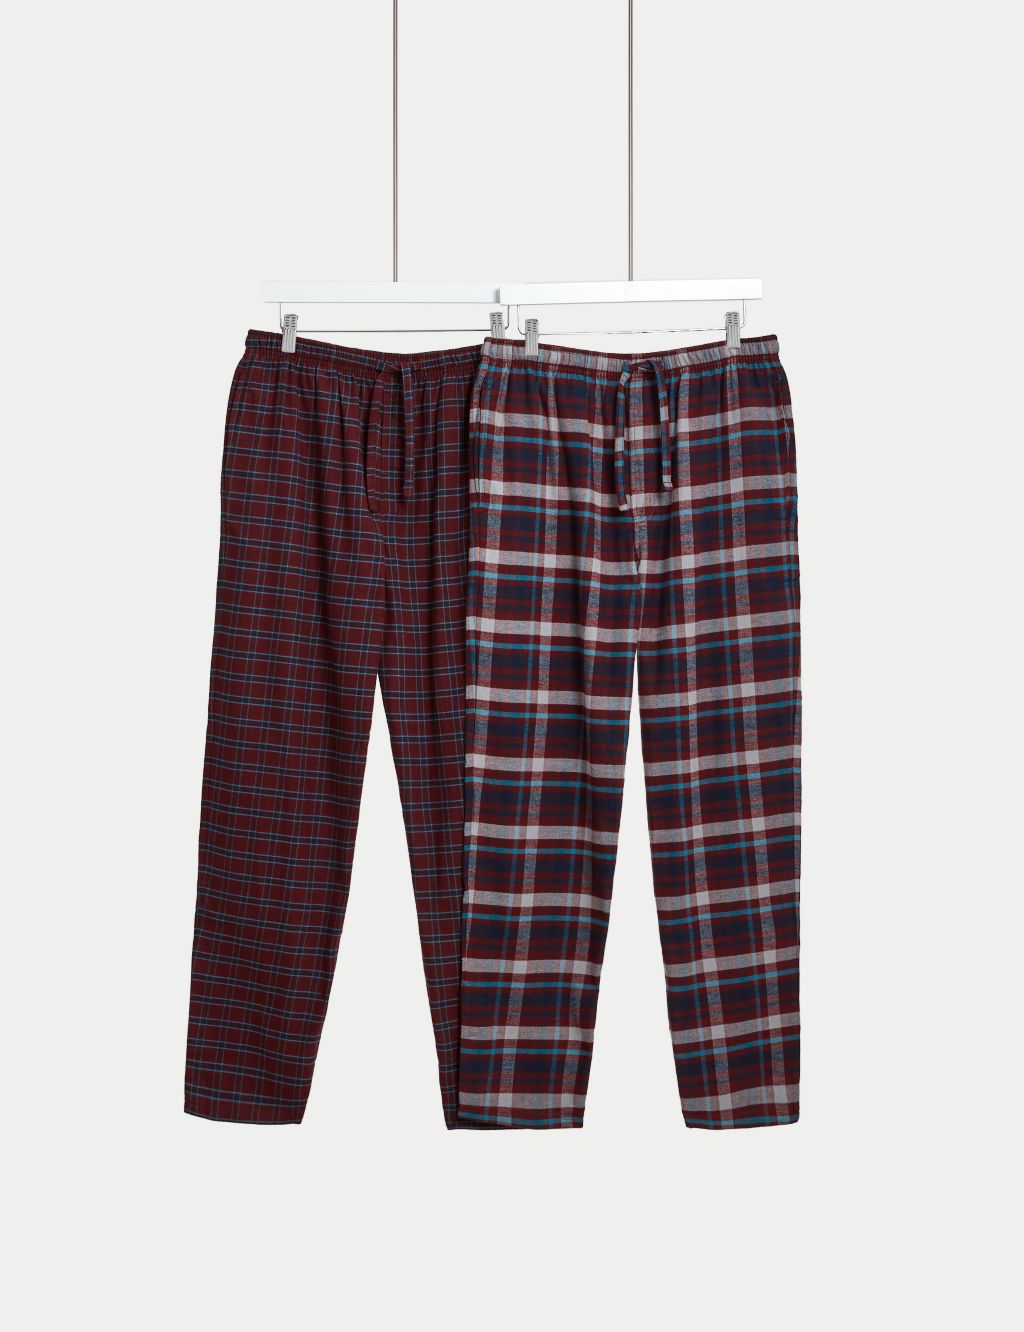 Regular Fit Flannel pyjama bottoms - Dark green/White checked - Men